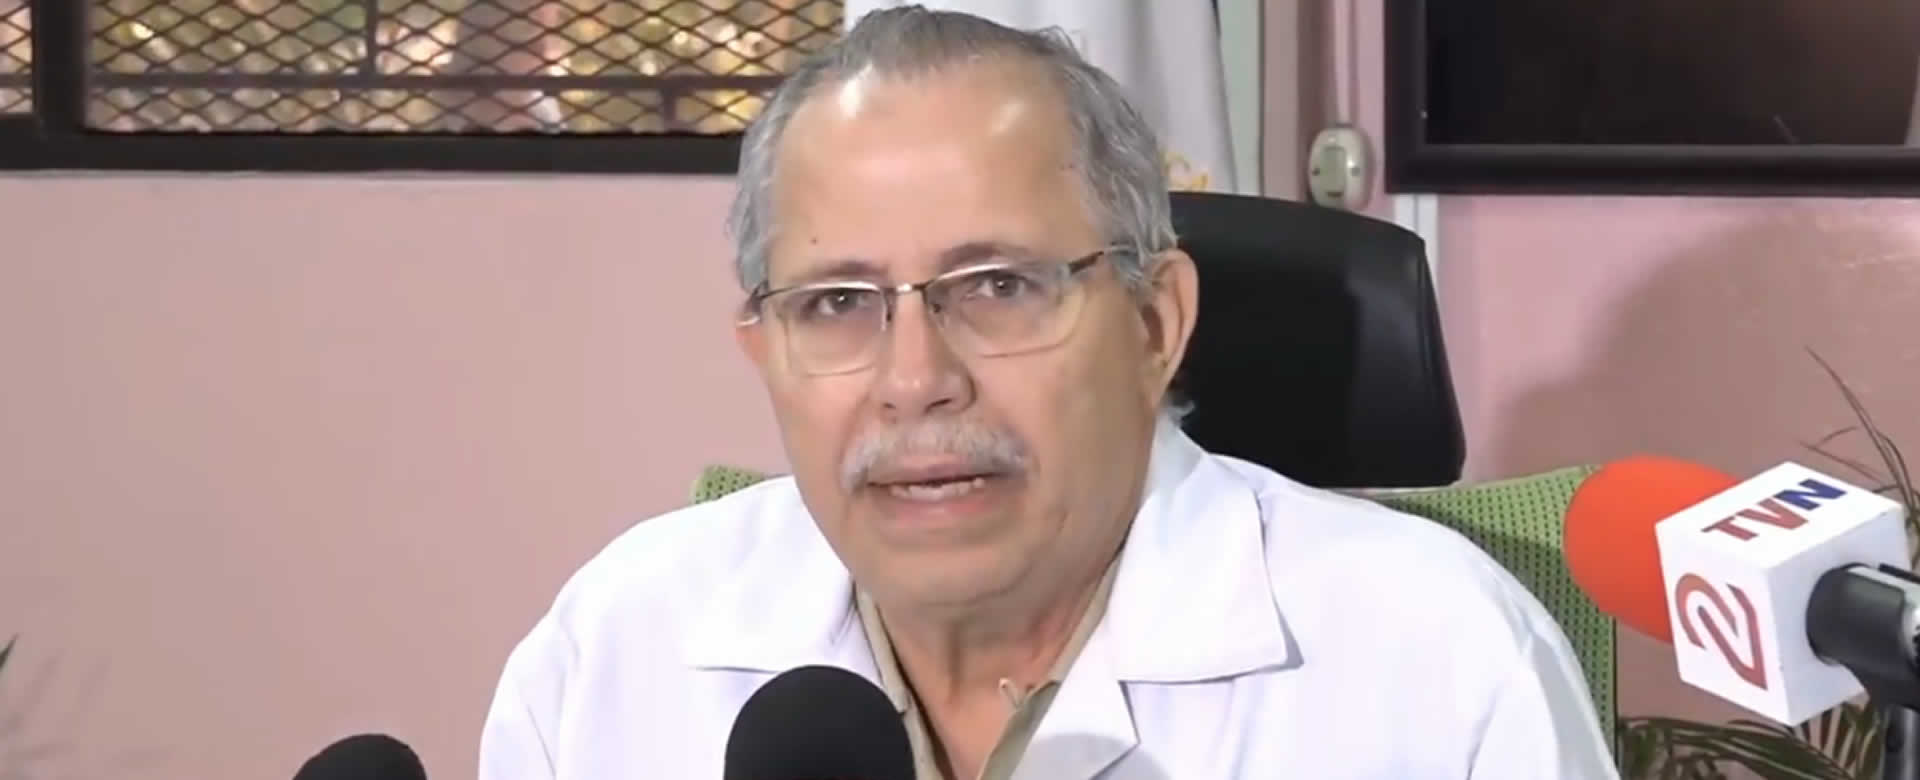 Doctor Carlos Sáenz, Secretario General del MINSA brinda datos actualizados de COVID-19 a medios de comunicación en Nicaragua